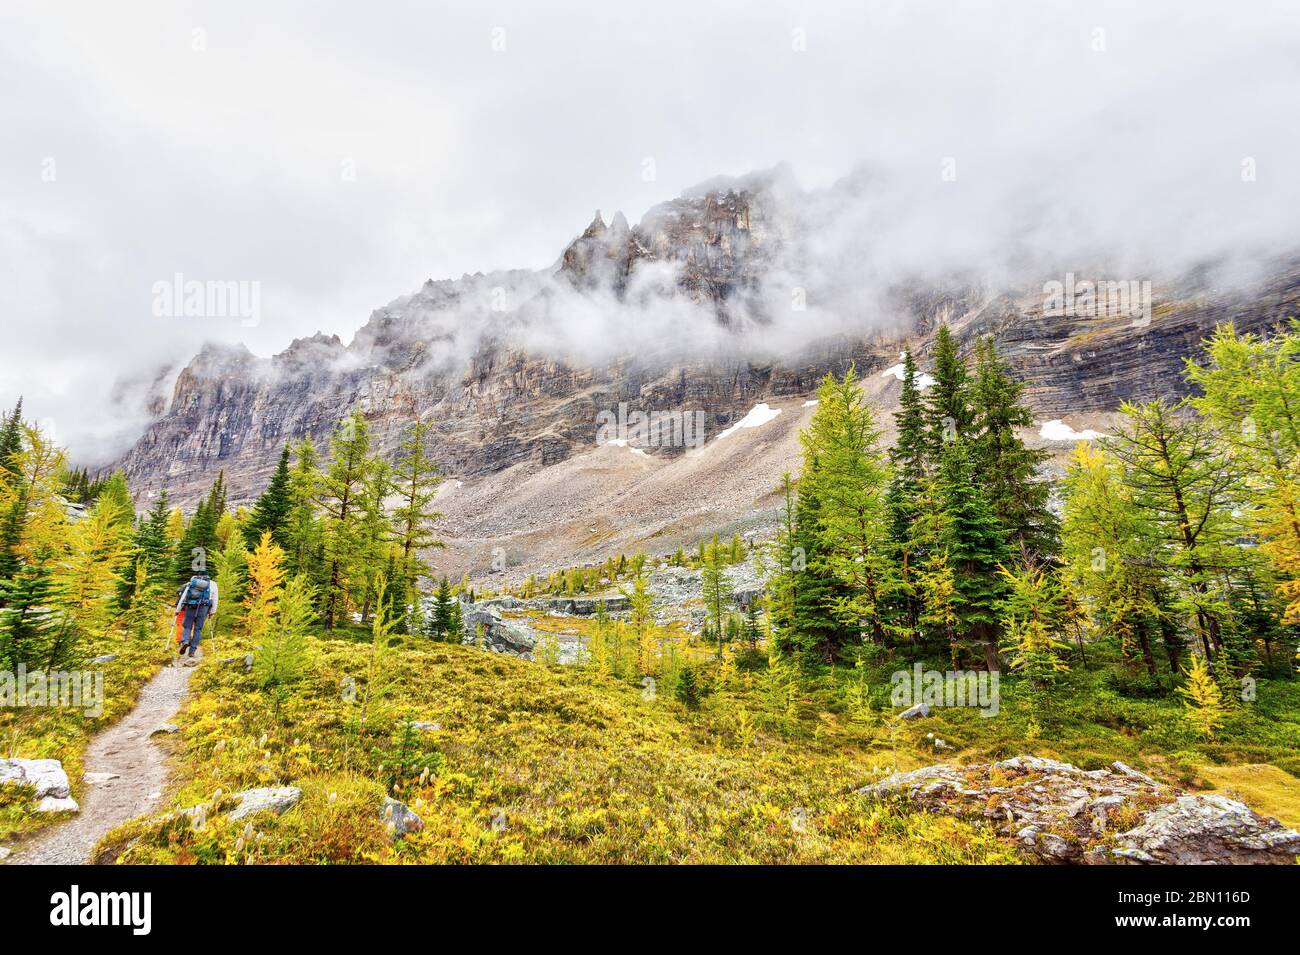 Gli escursionisti hanno visto sul sentiero Otrabin al lago o'Hara nel Canadian Rockies of Yoho National Park, mentre le nuvole pesanti scendono sul Monte Shaffer. Foto Stock